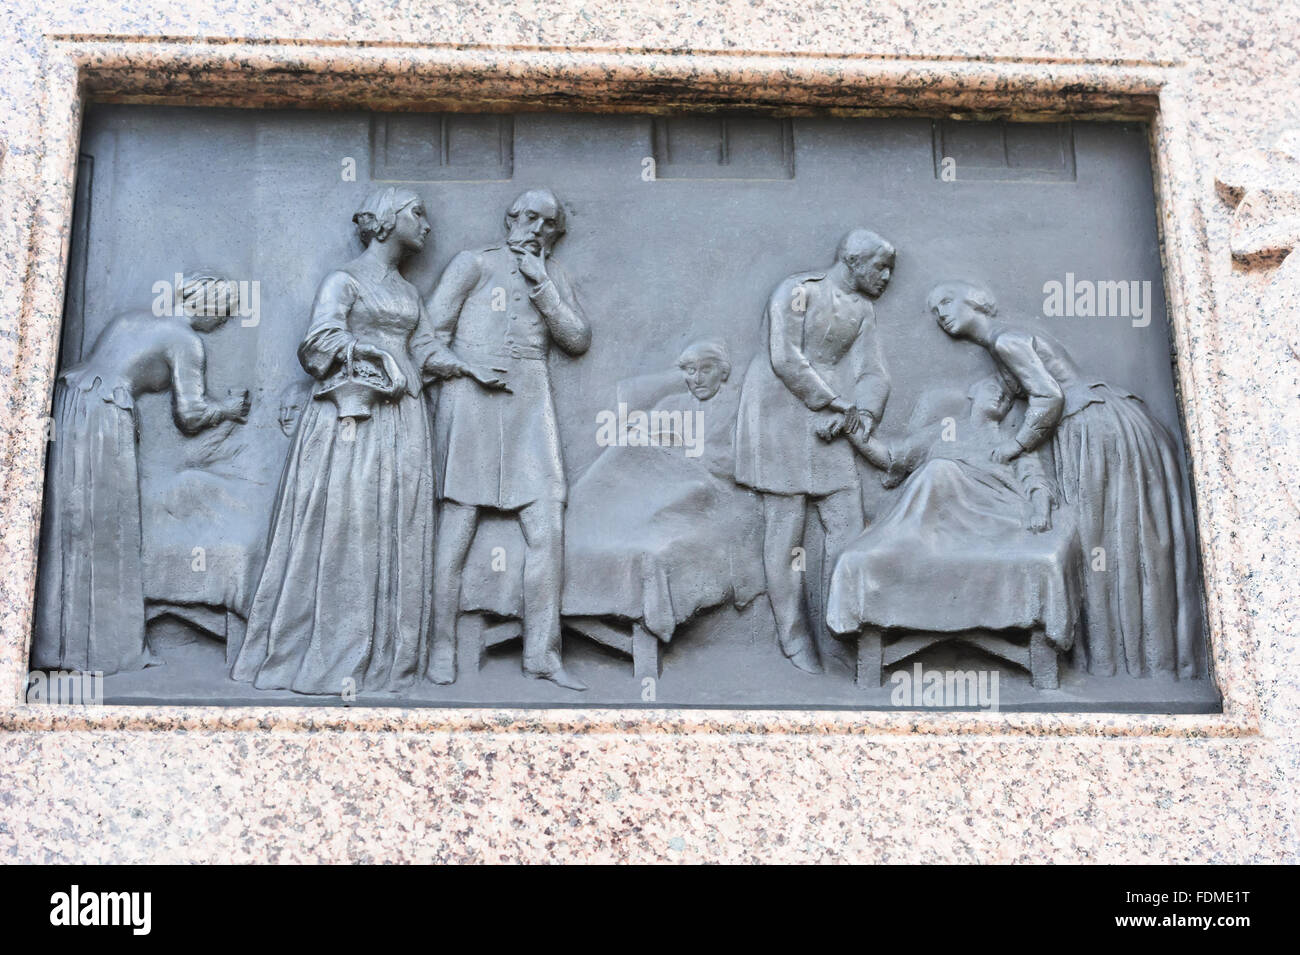 Bajorrelieve en bronce de eventos históricos durante la Guerra de Crimea en los cuatros lados del monumento, Florence Nightingale de Londres. Foto de stock